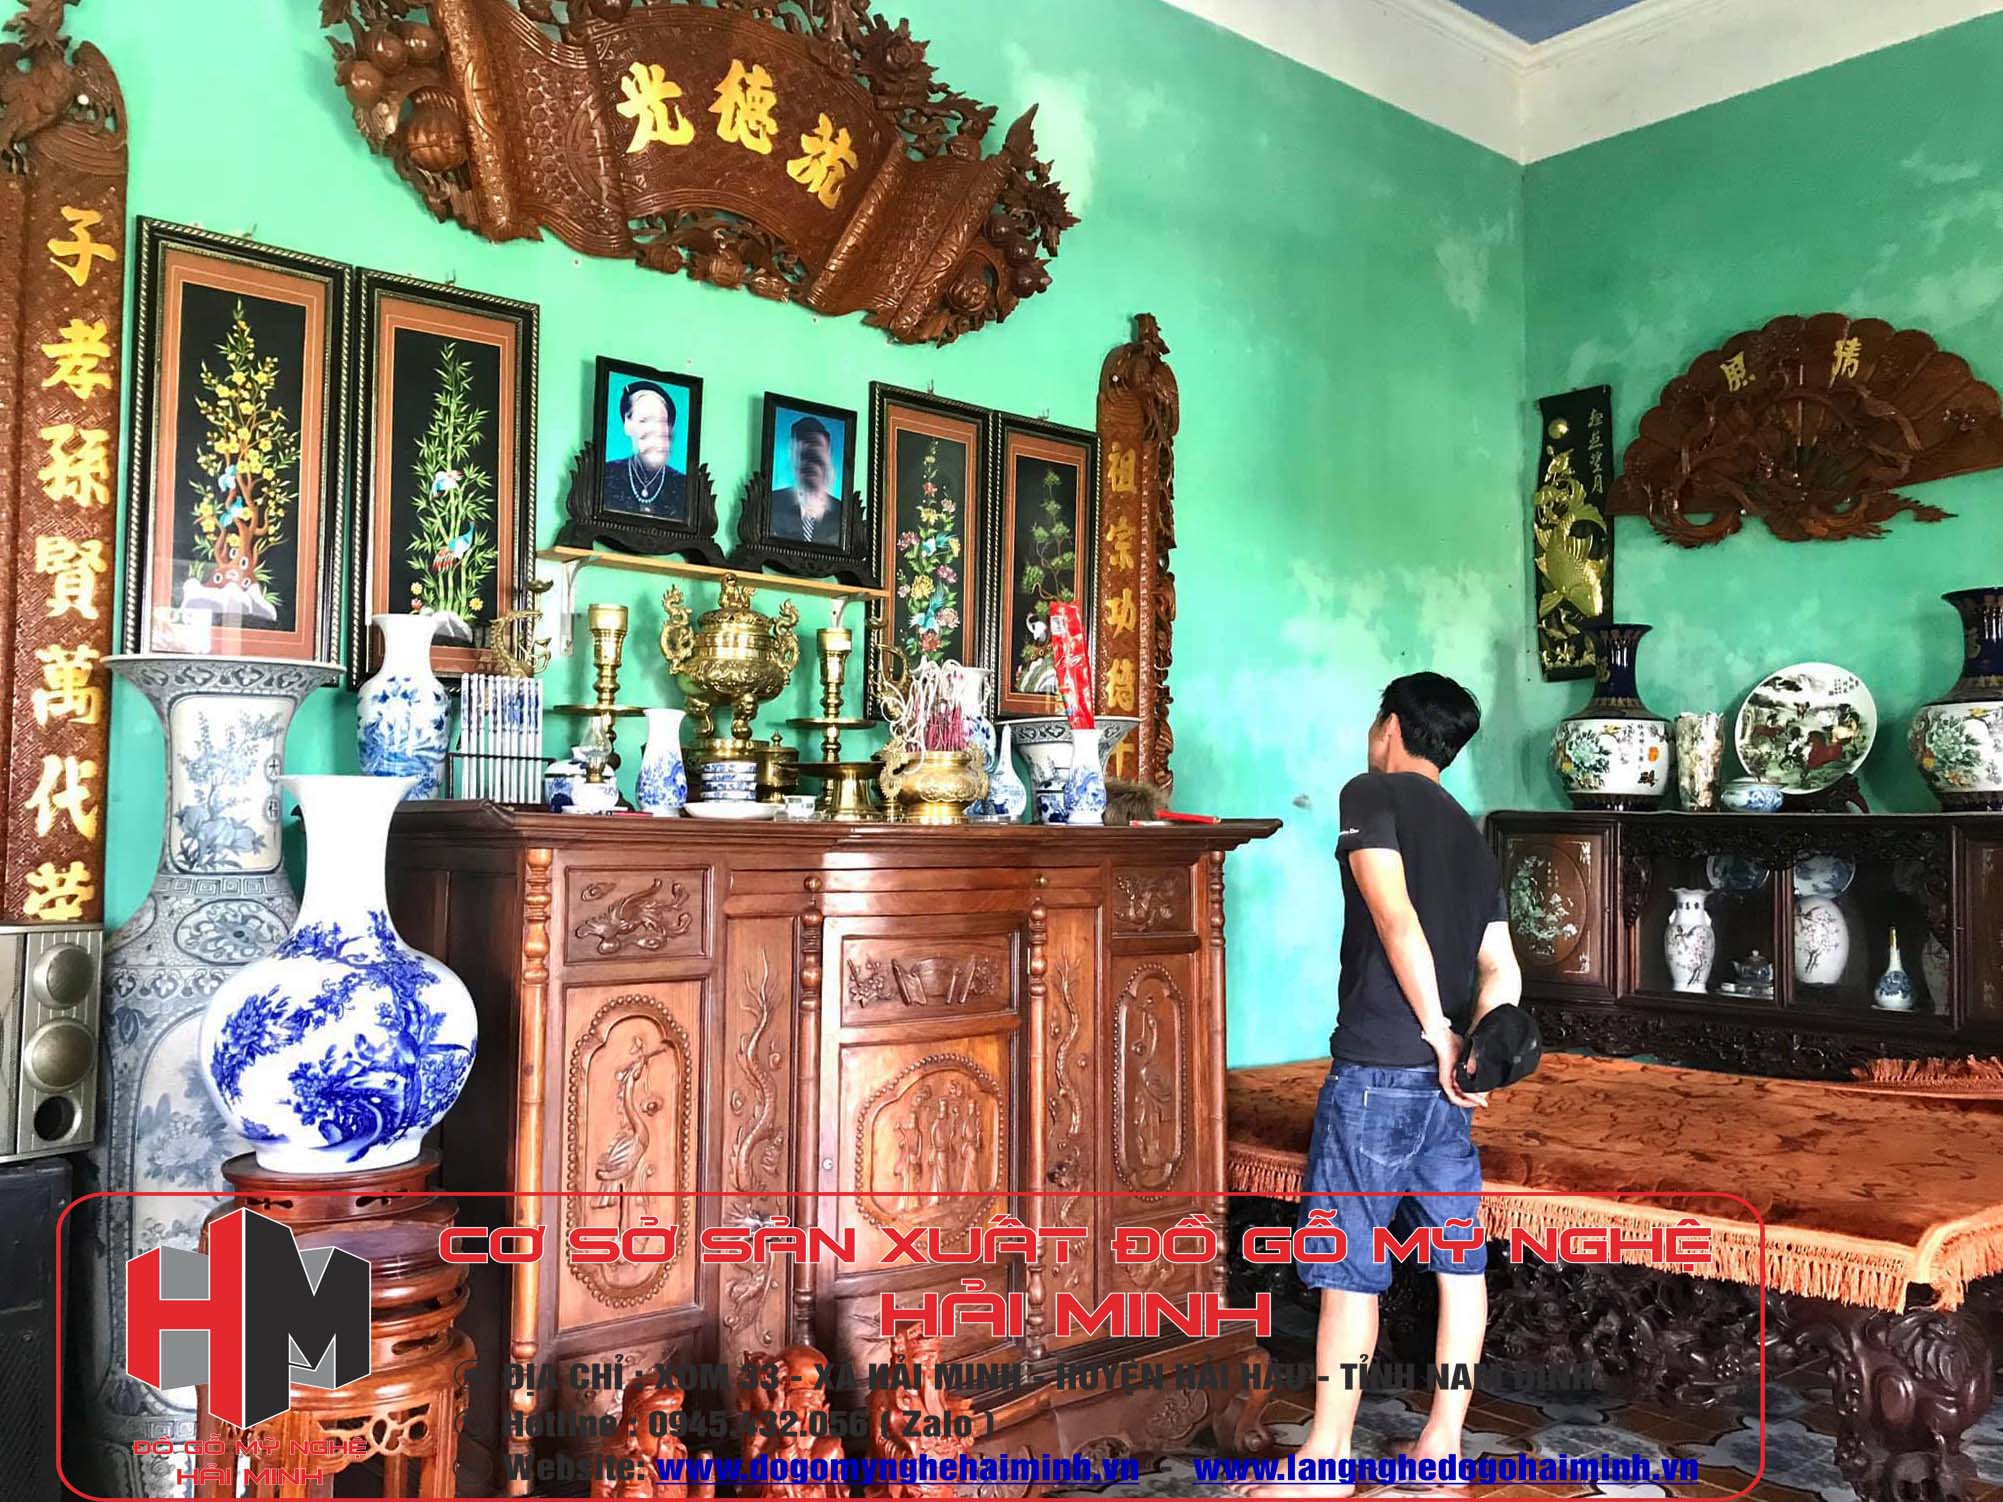 Tìm hiểu làng nghề đồ gỗ mỹ nghệ Hải Minh - Nam Định